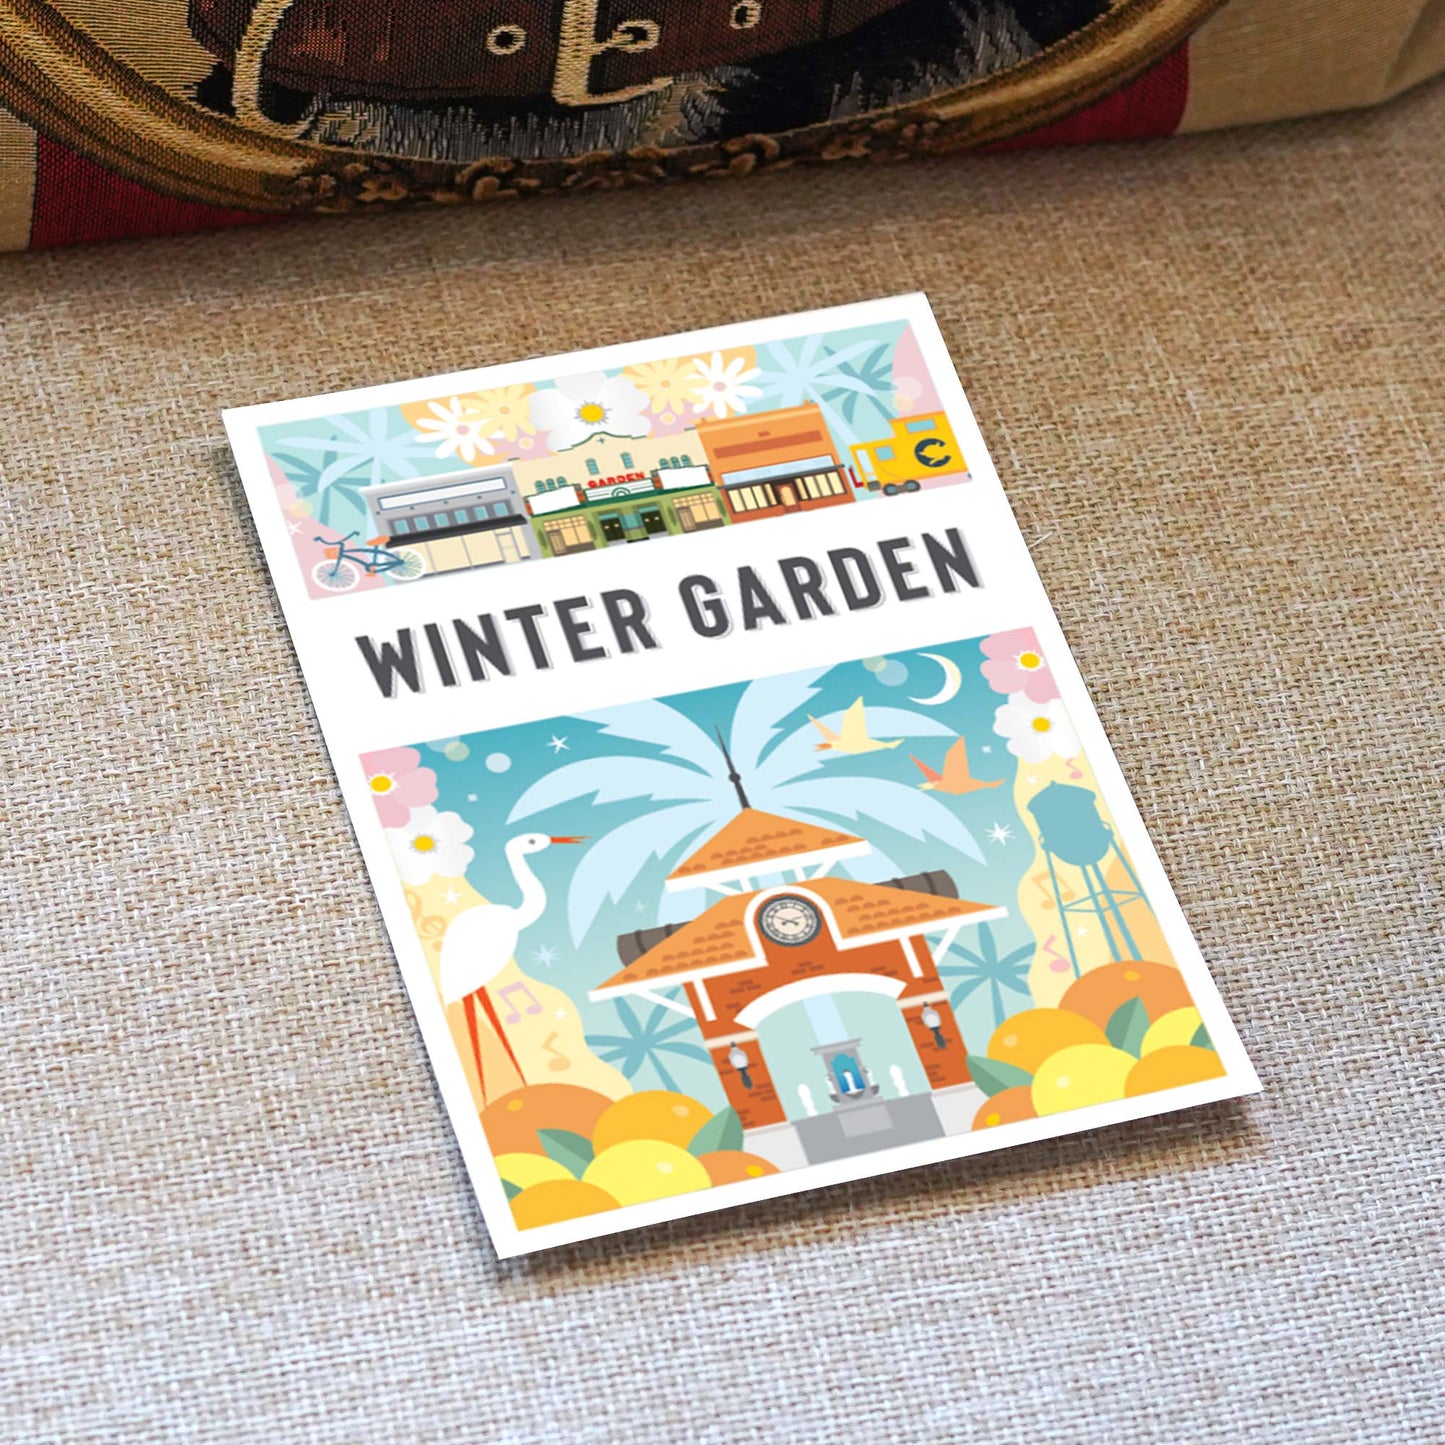 Winter Garden FL 5x7 Montage City Series Postcard